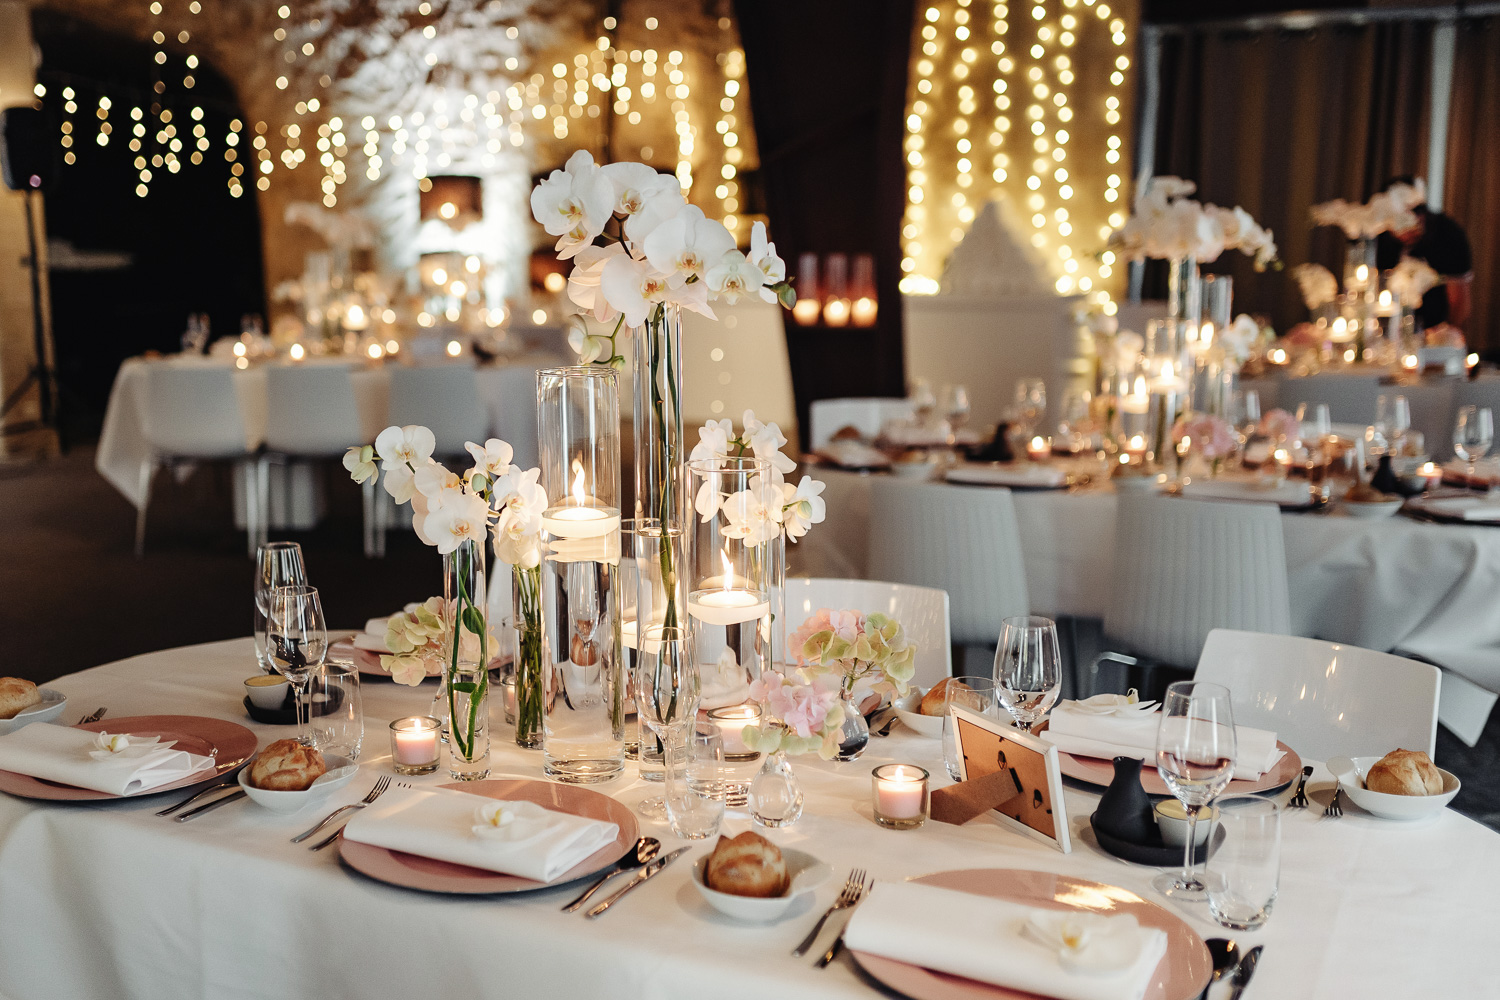 Bruiloft decoratie. На столе лежат тарелки с именами гостей, свечами и вазами, белыми орхидеями и светлыми гирляндами